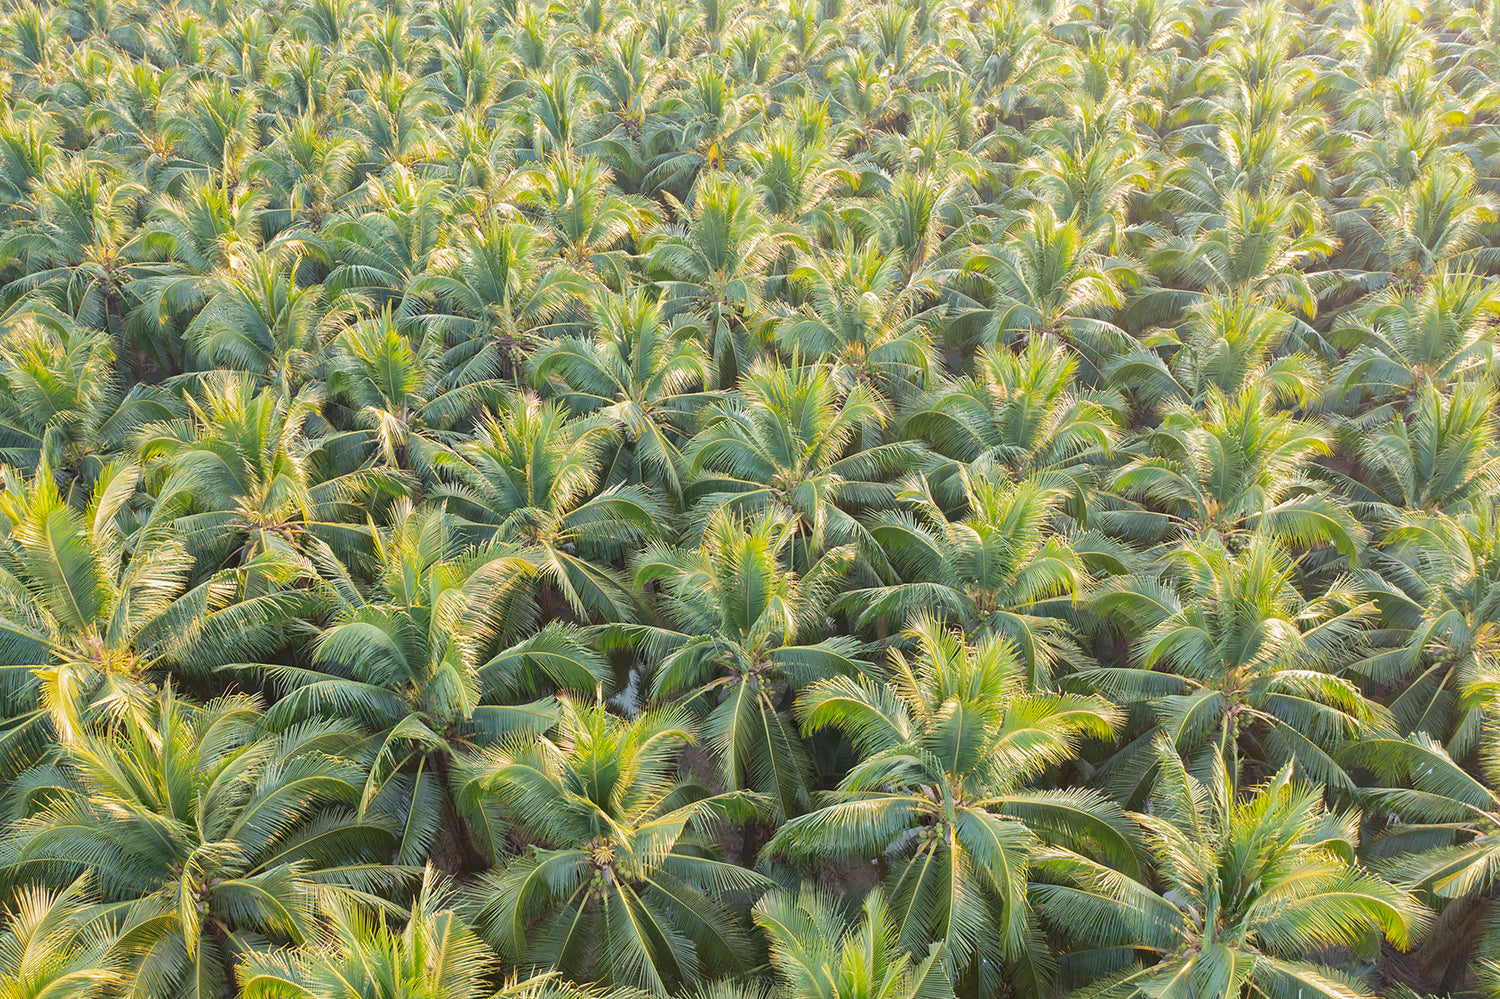 Biofertilizers used in coconut farming